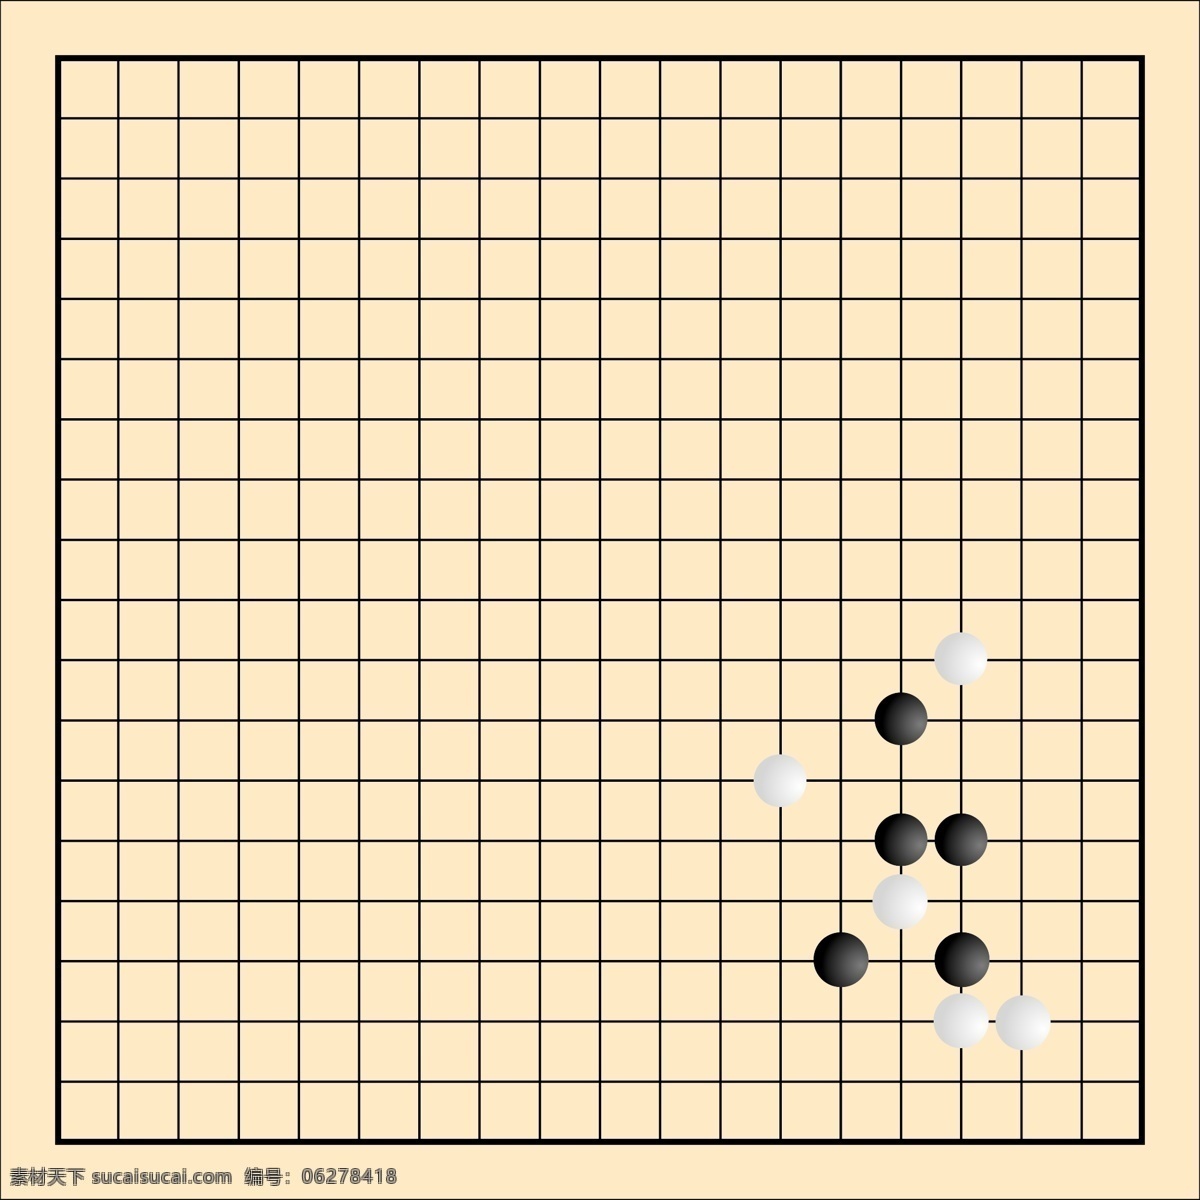 围棋 娱乐 游戏 棋牌 文化艺术 传统文化 棋牌类 矢量图库